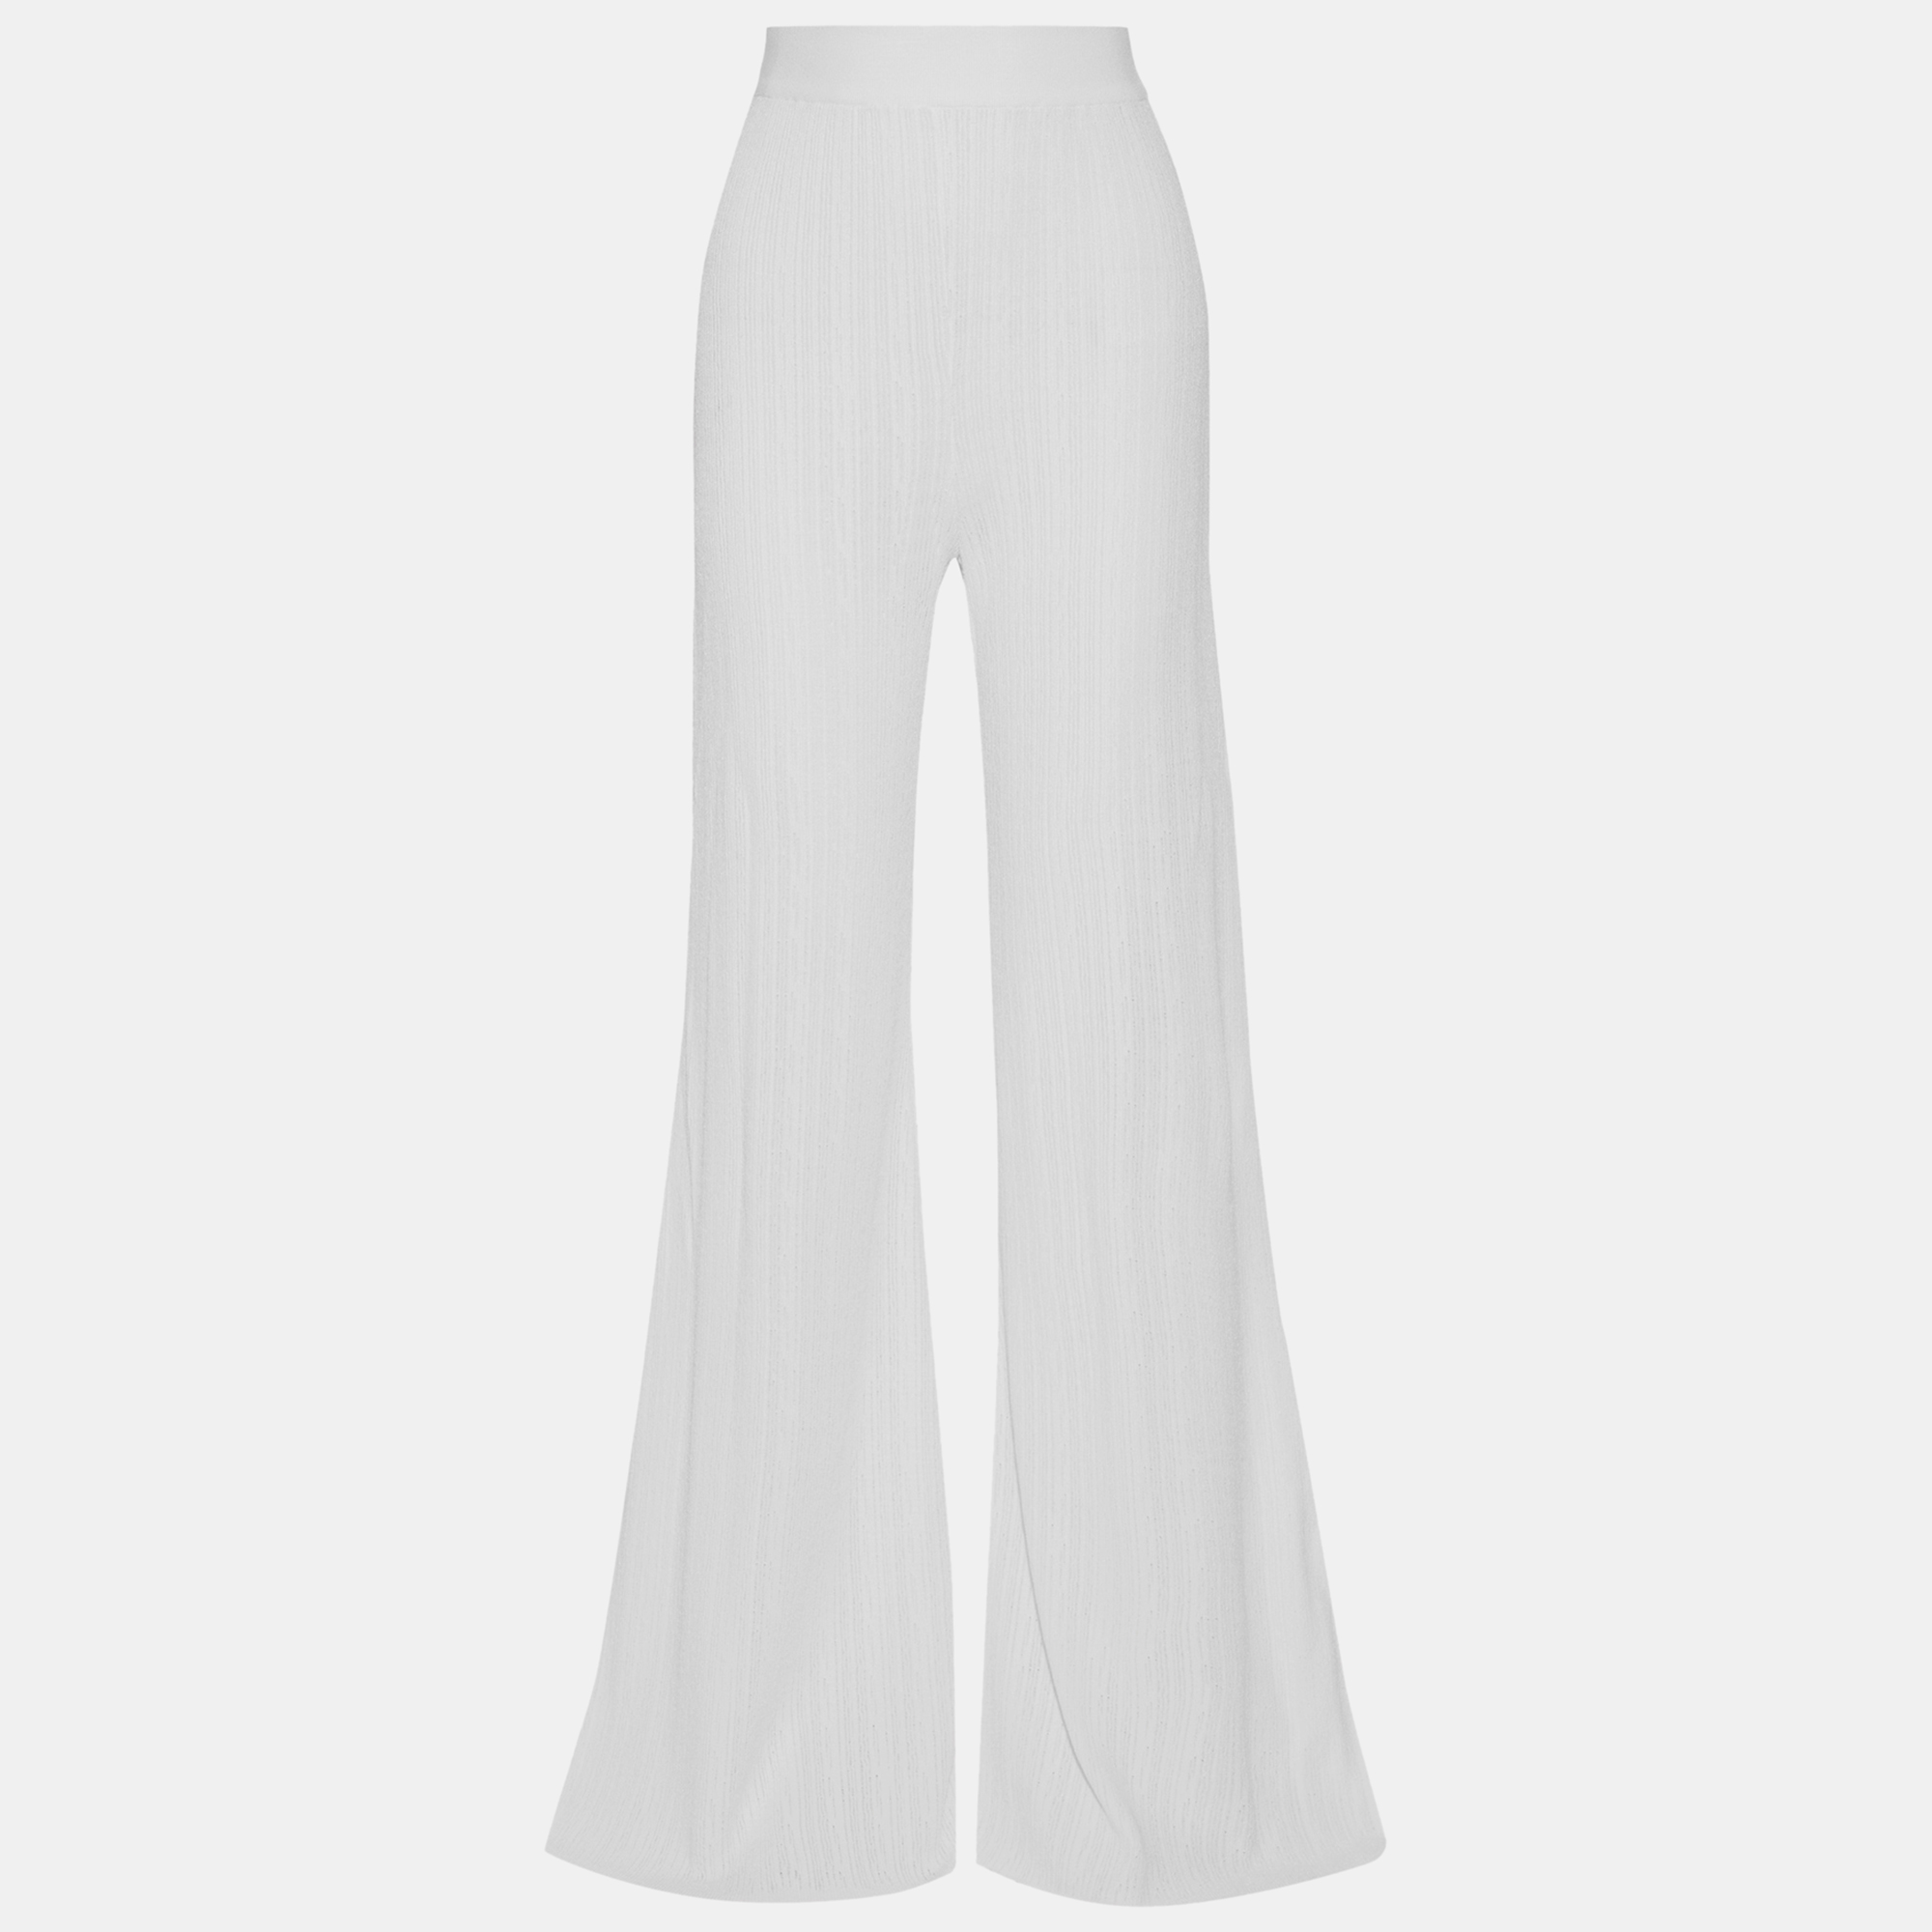 Balmain white crinkled knit flared pants s (fr 36)